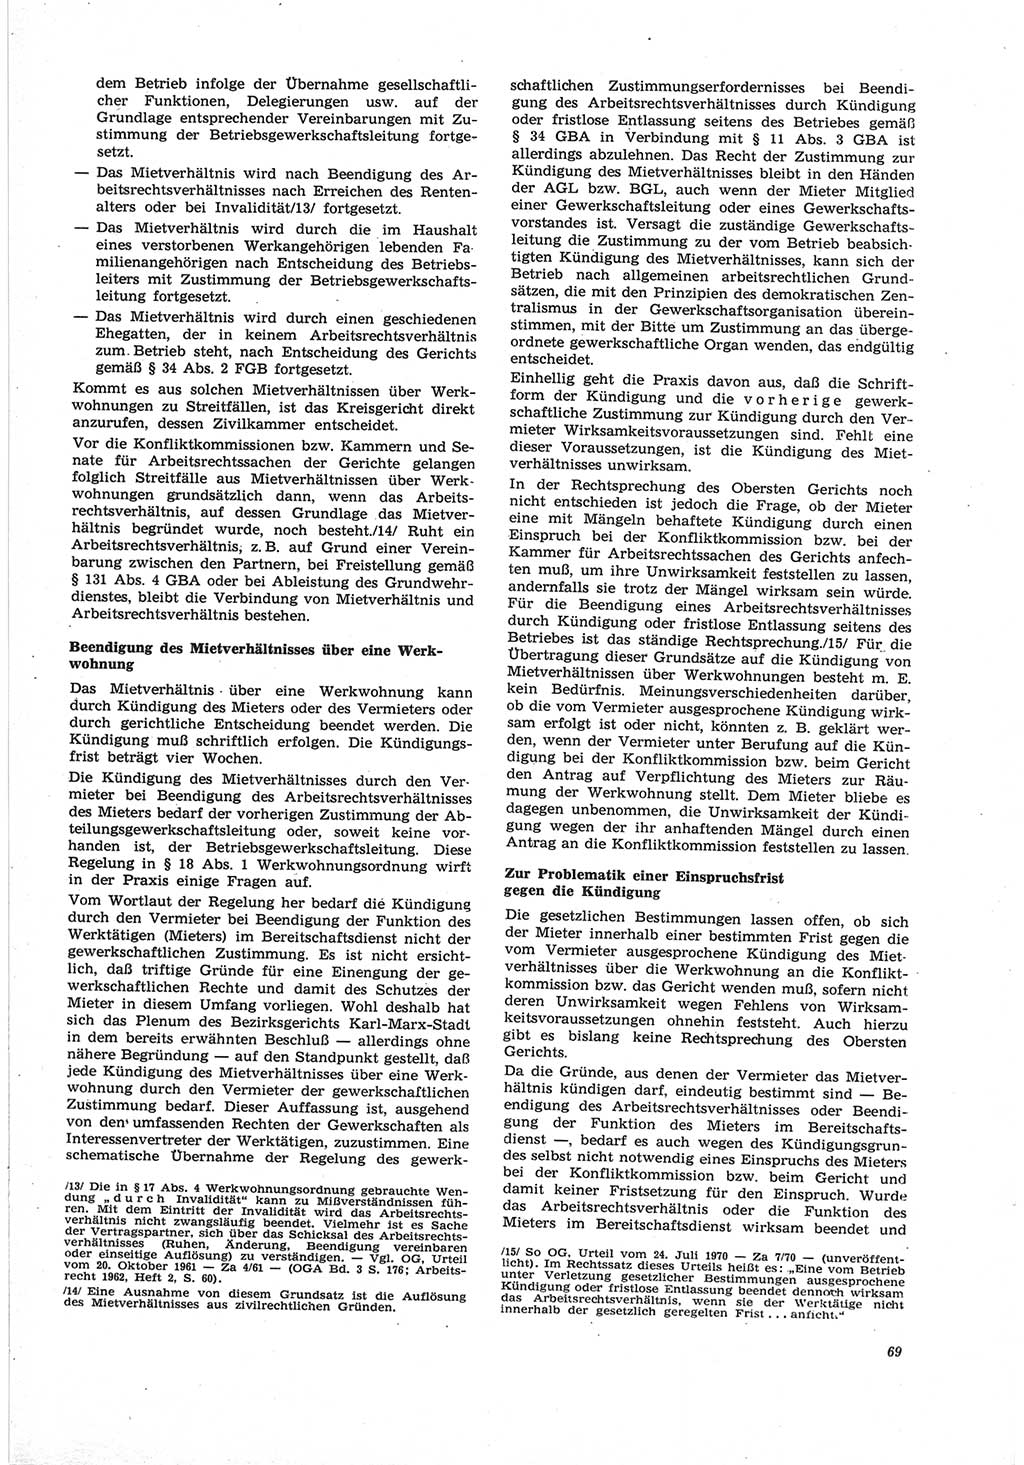 Neue Justiz (NJ), Zeitschrift für Recht und Rechtswissenschaft [Deutsche Demokratische Republik (DDR)], 25. Jahrgang 1971, Seite 69 (NJ DDR 1971, S. 69)